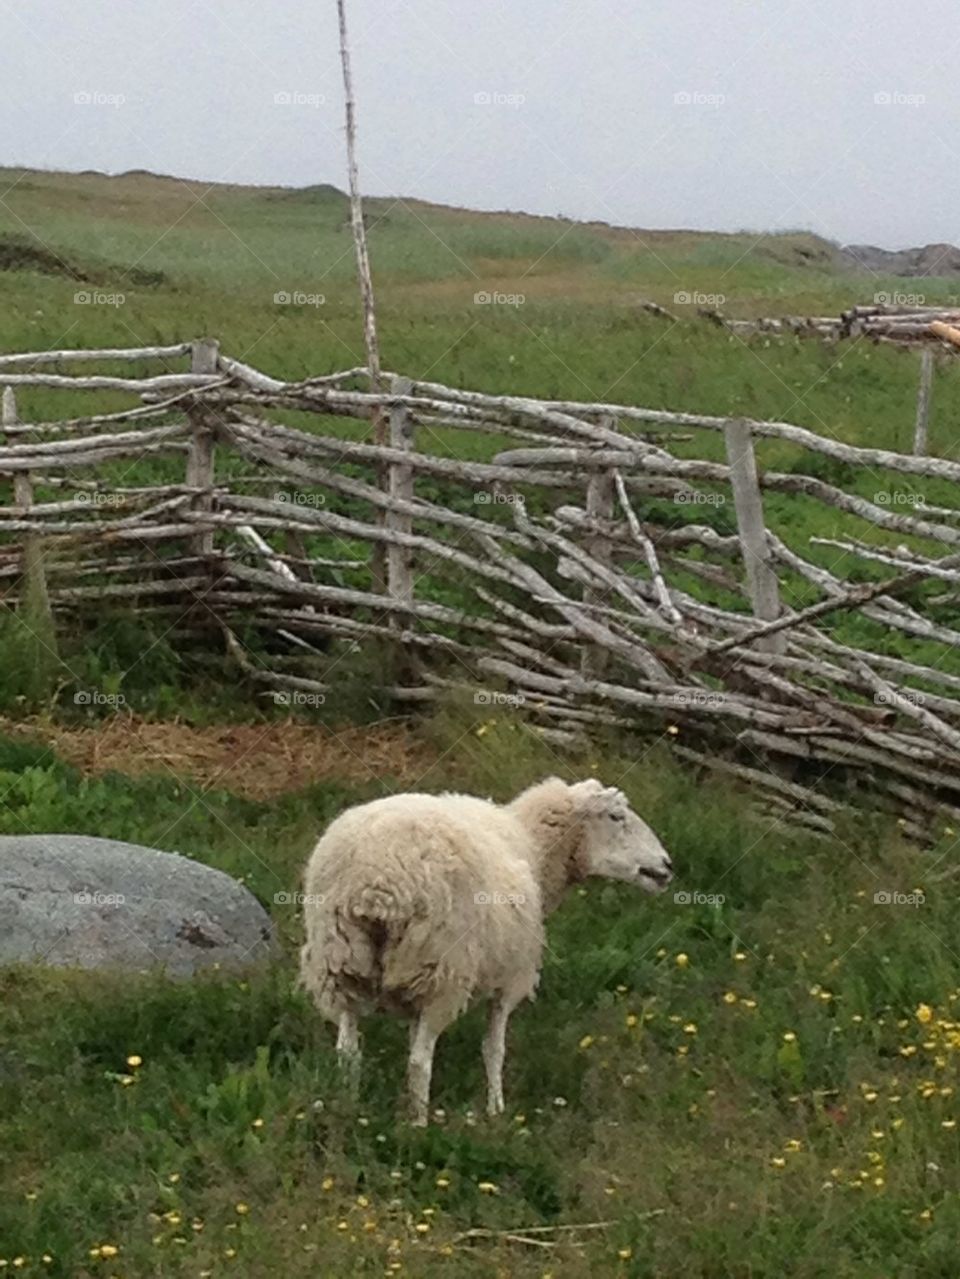 Newfoundland sheep